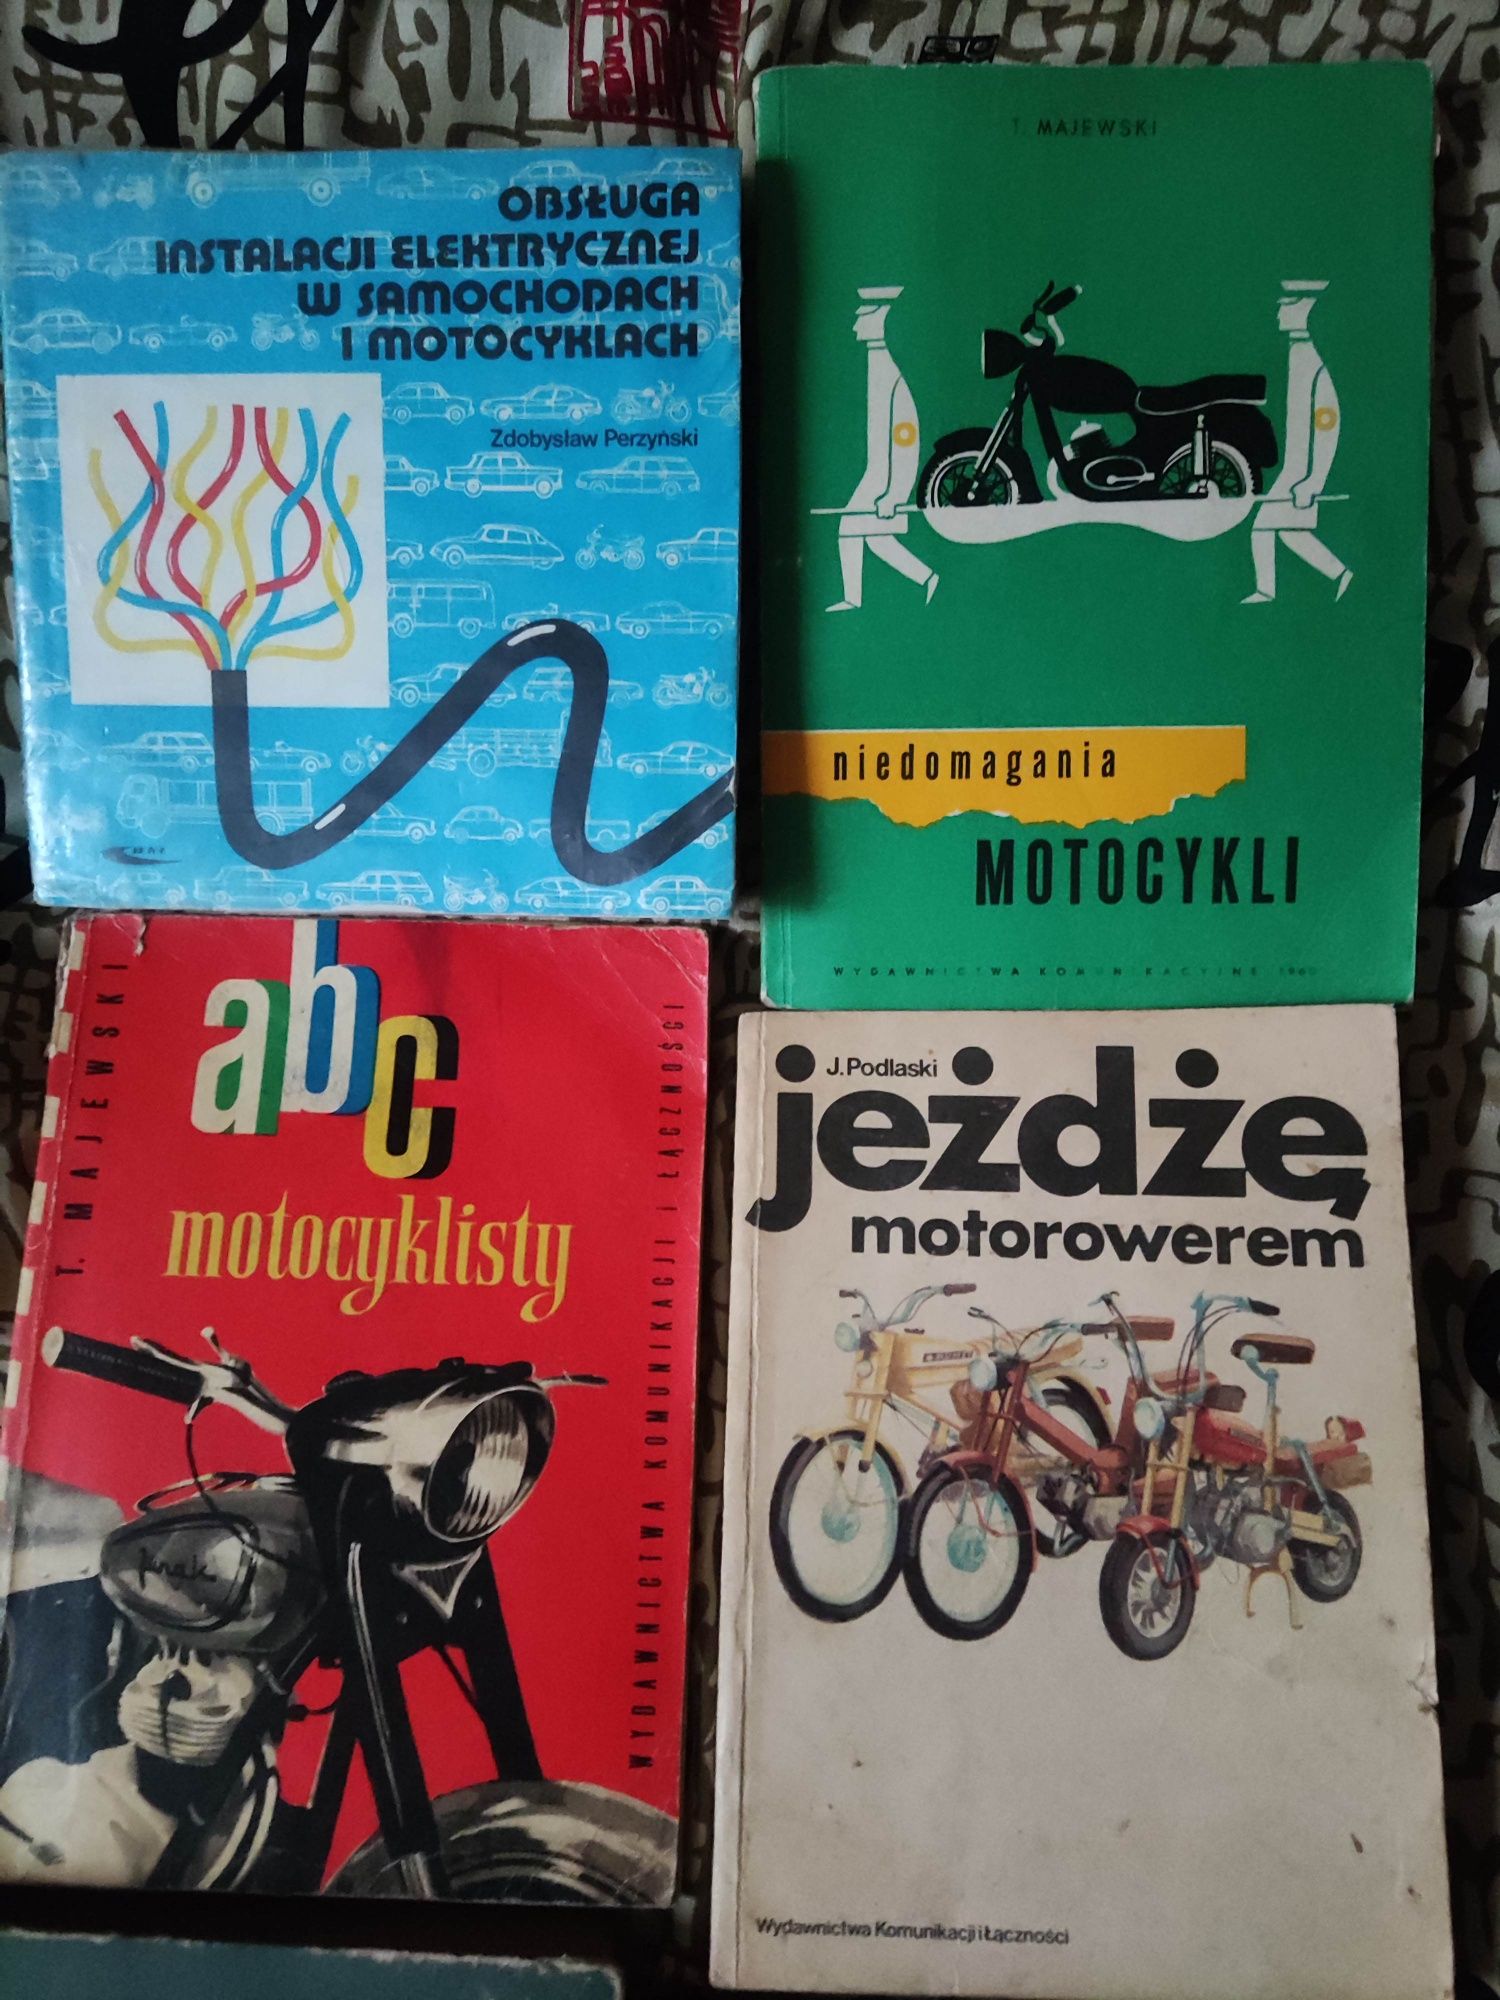 Książki o motocyklach i motorowerach z czasów PRL-u

Pytaj o ceny.

Po